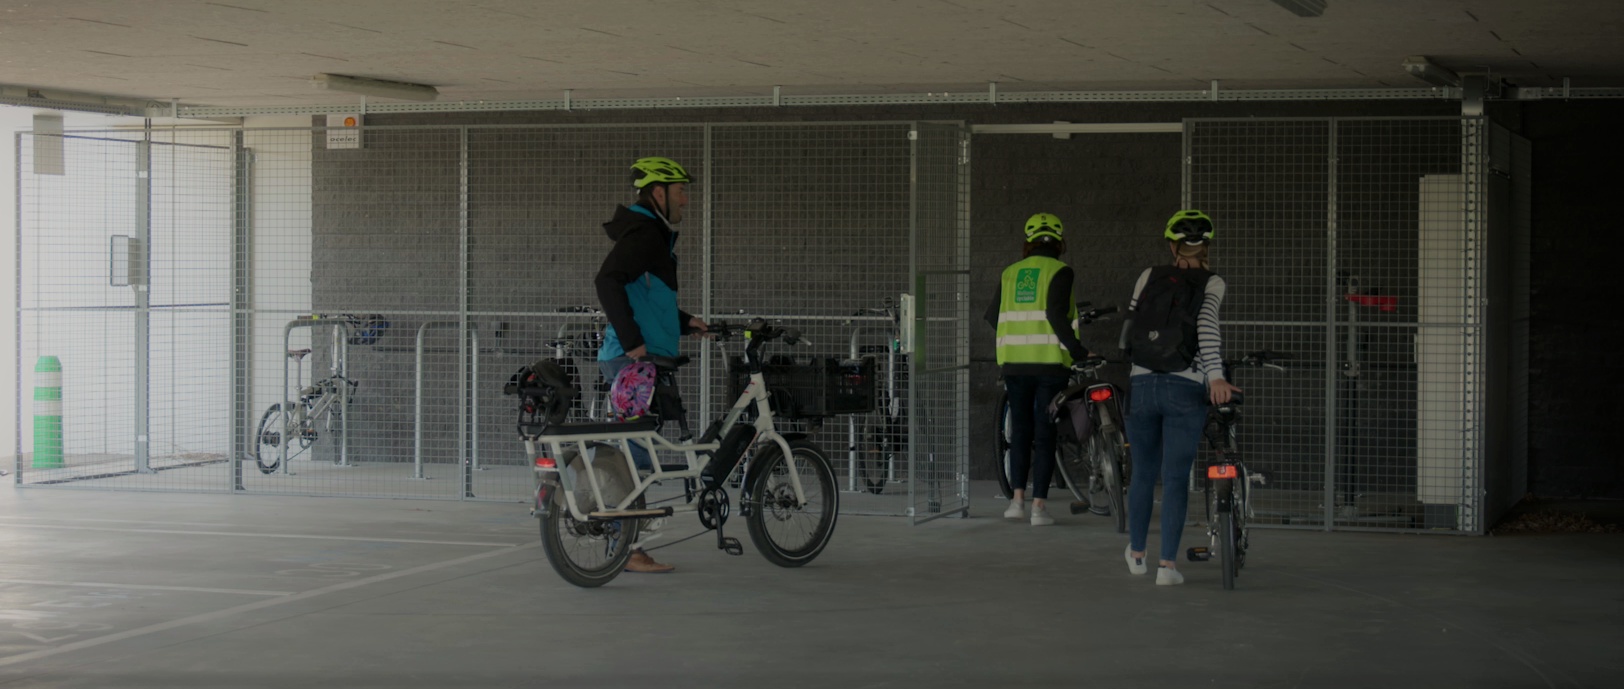 Un parking vélo sécurisé et confortable - Tous Vélo-Actifs !